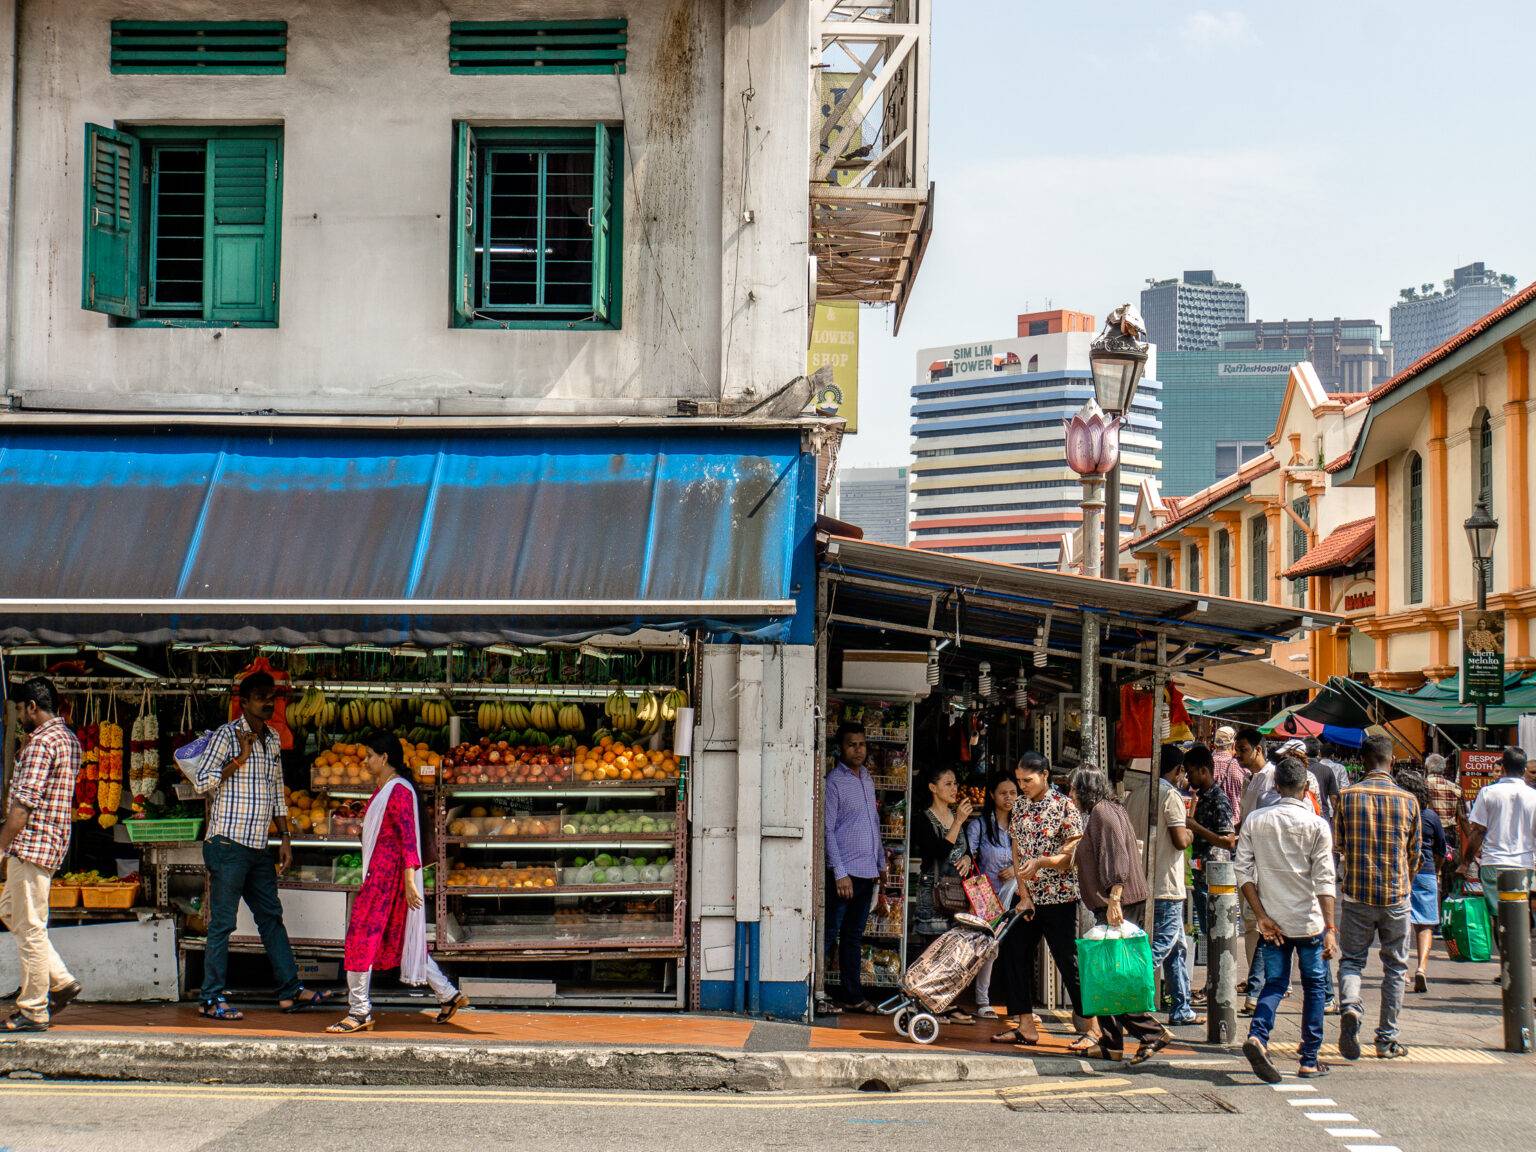 Eine Geschäftsstraße im Singapurer Stadtviertel Little India mit vielen Märkten und Streetfoodständen.